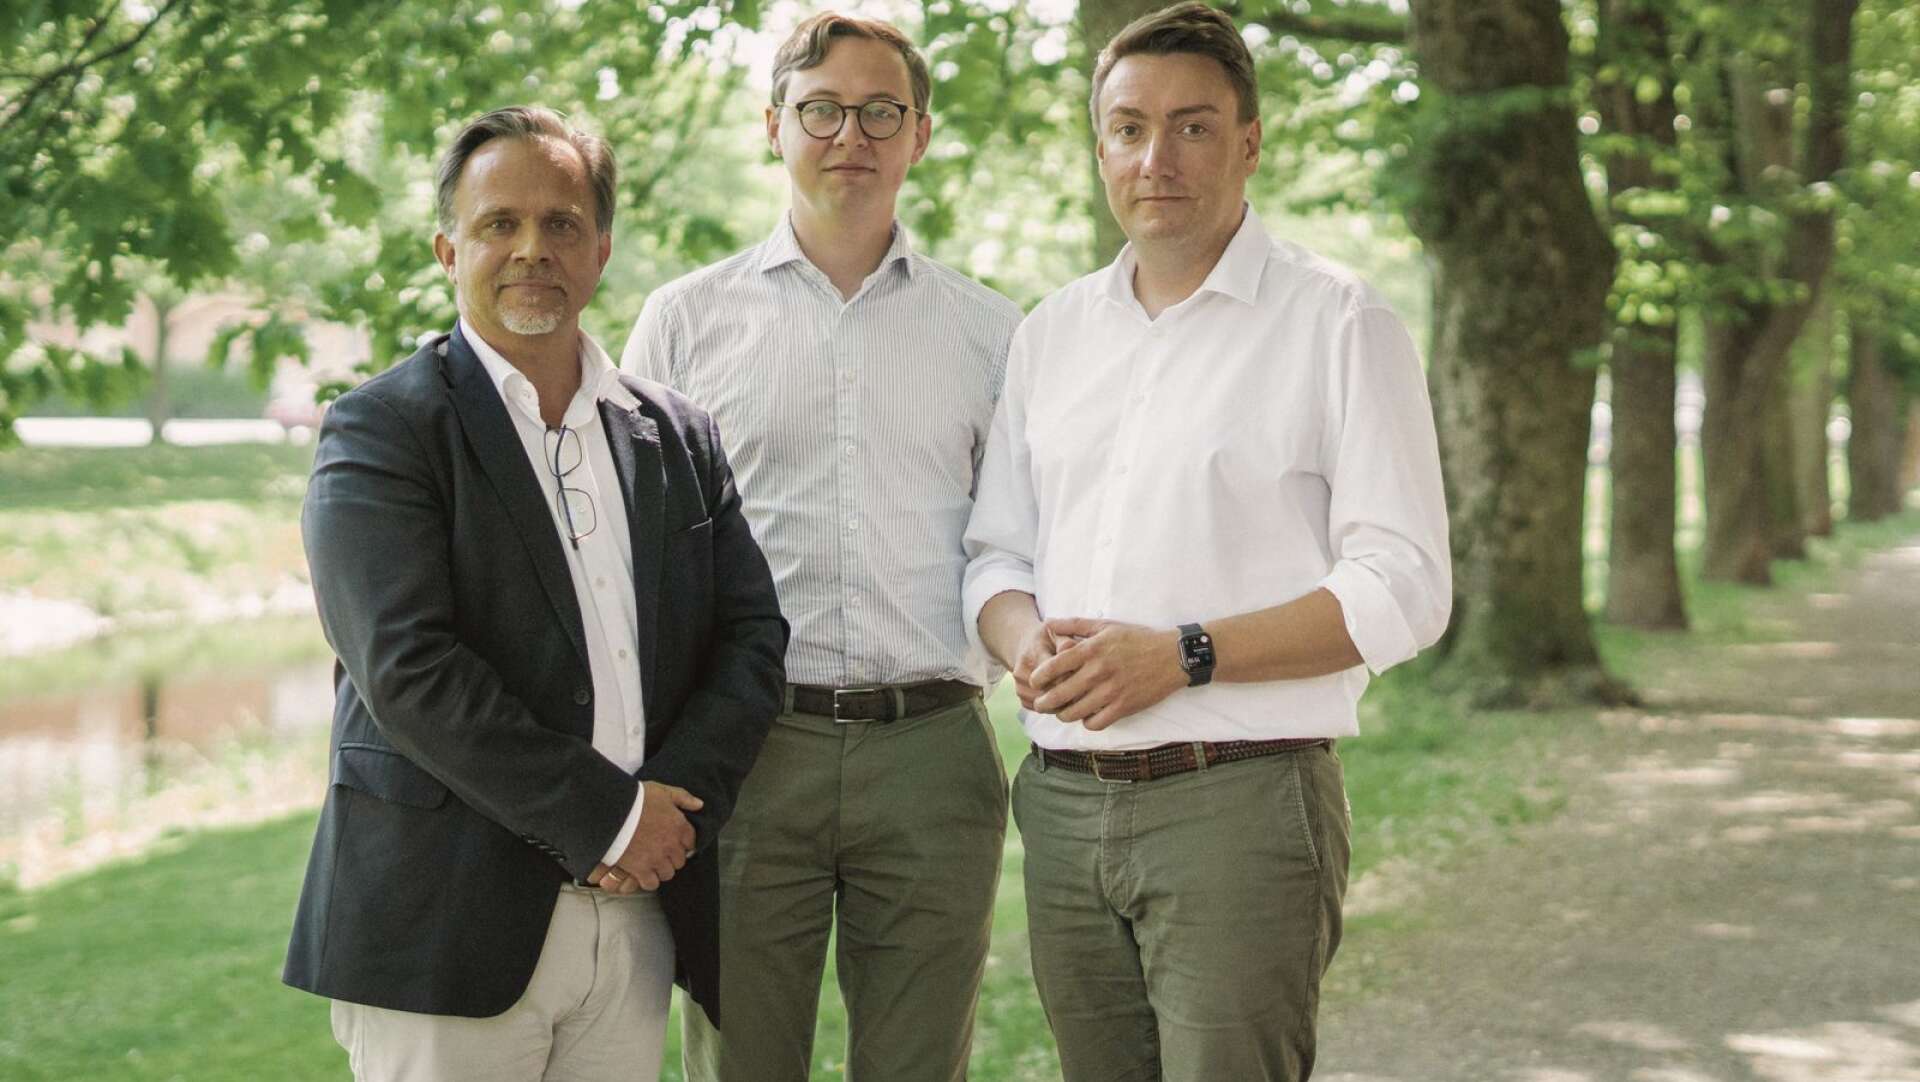 Om Karlstad ska vara en välskött kommun i framtiden krävs politiker som prioriterar somligt på bekostnad av annat skriver, Niklas Wikström (L), Alexander Torin (M) samt Erik Nilsson (KD).